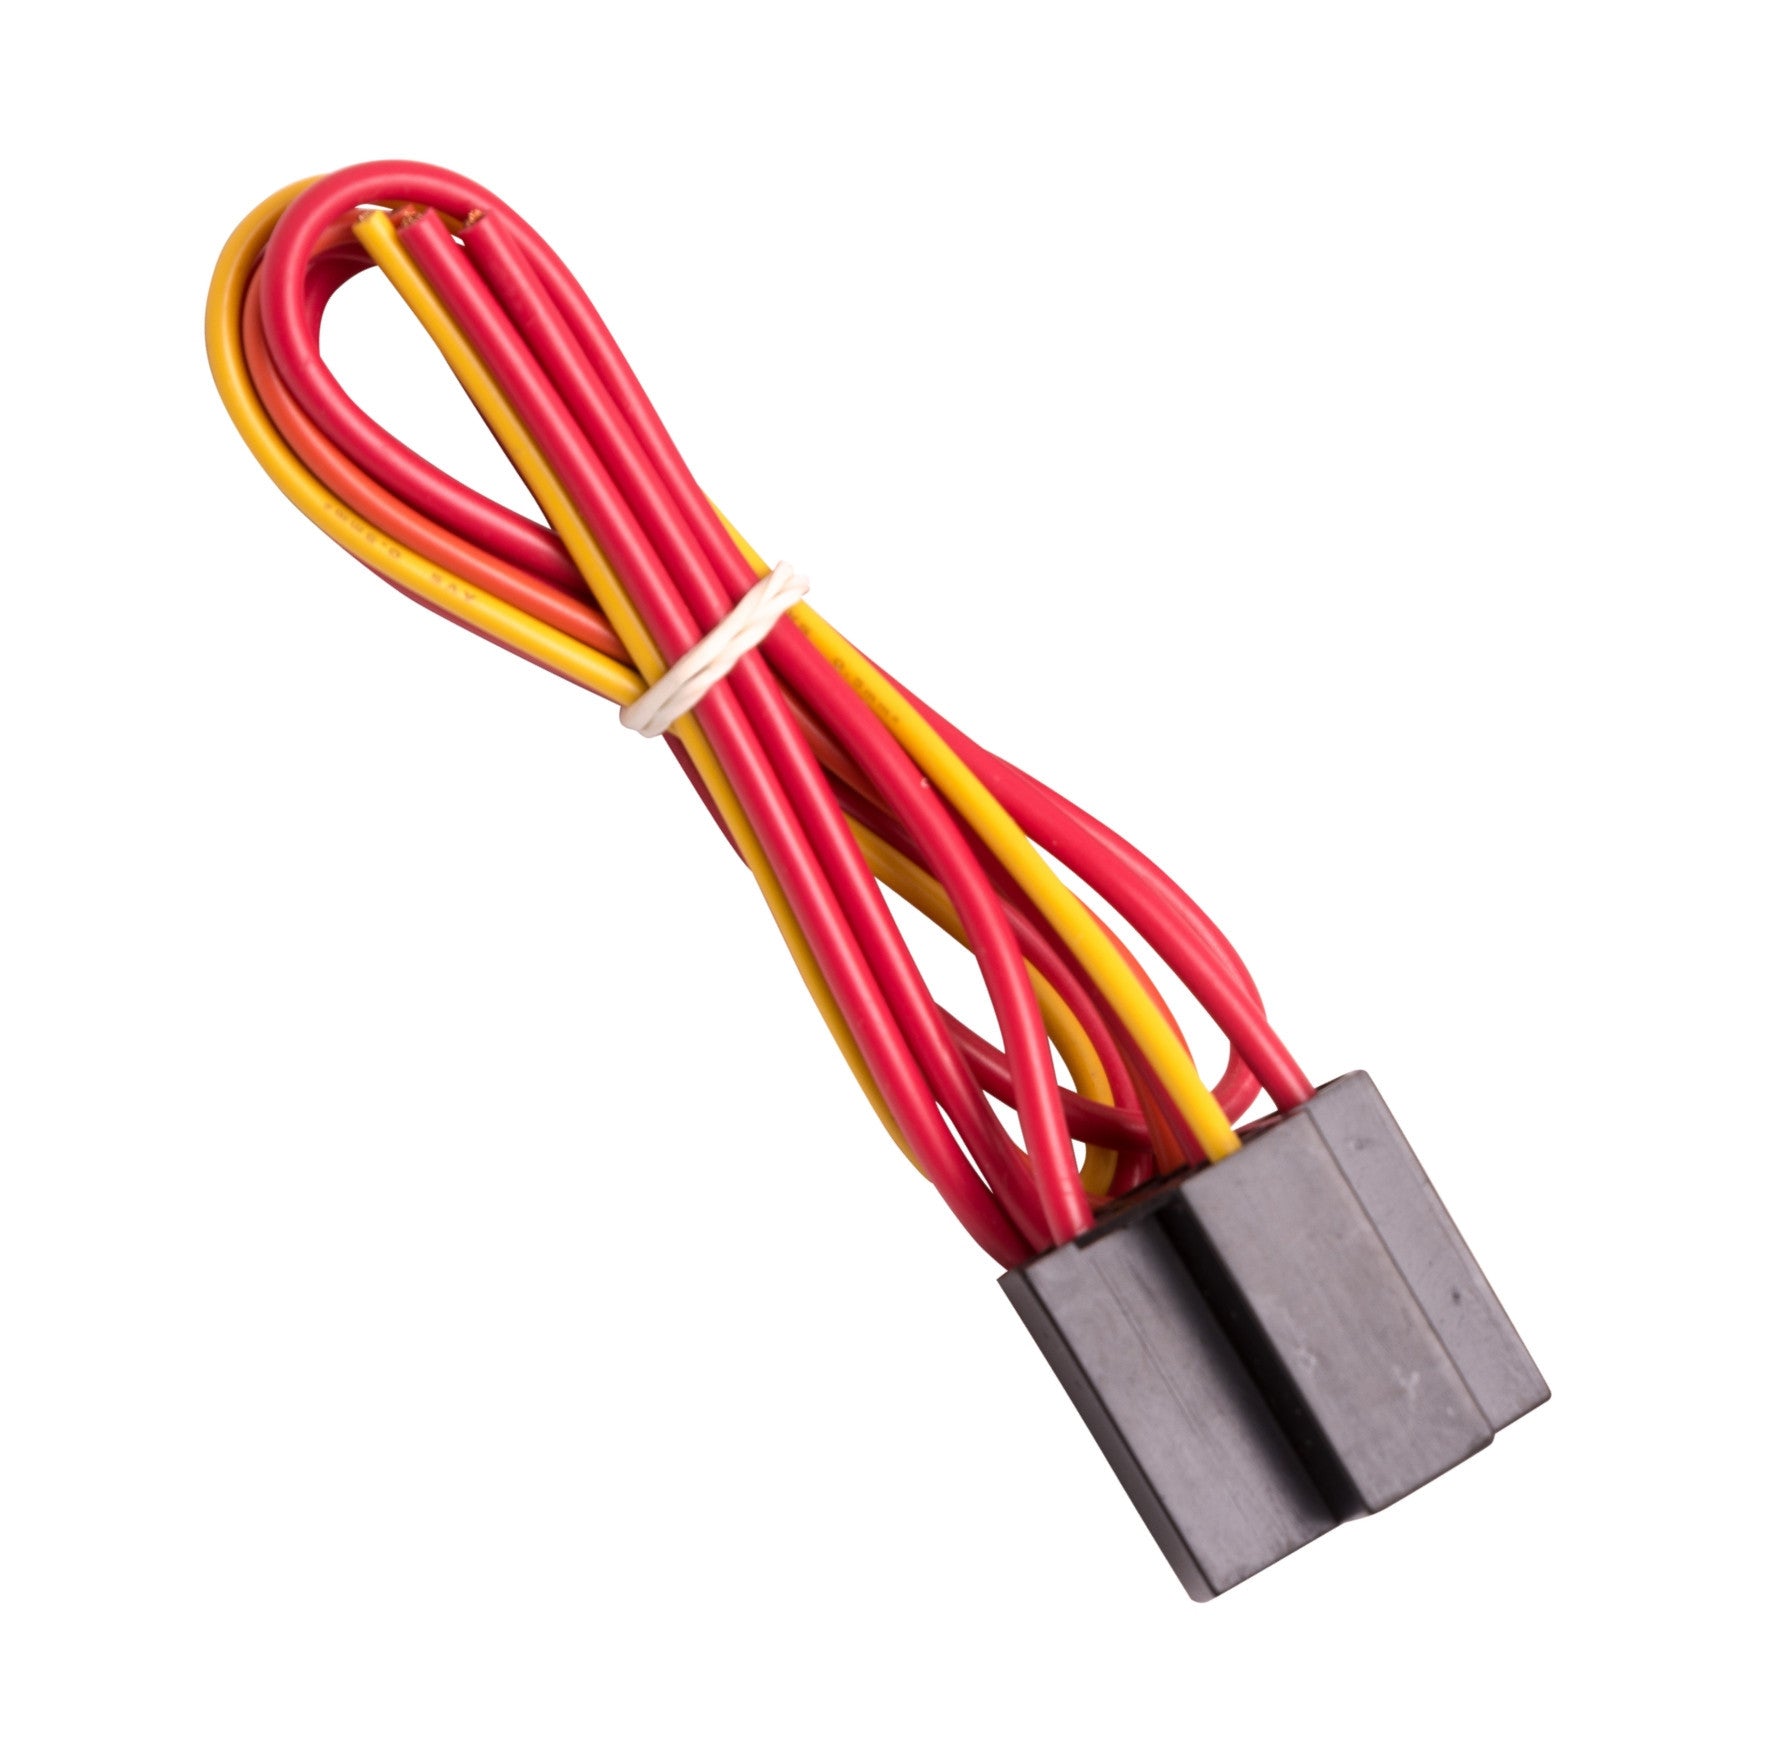 12 volt Ổ cắm đơn và dây nối cho rơle ném kép một cực (SPDT) Product Image